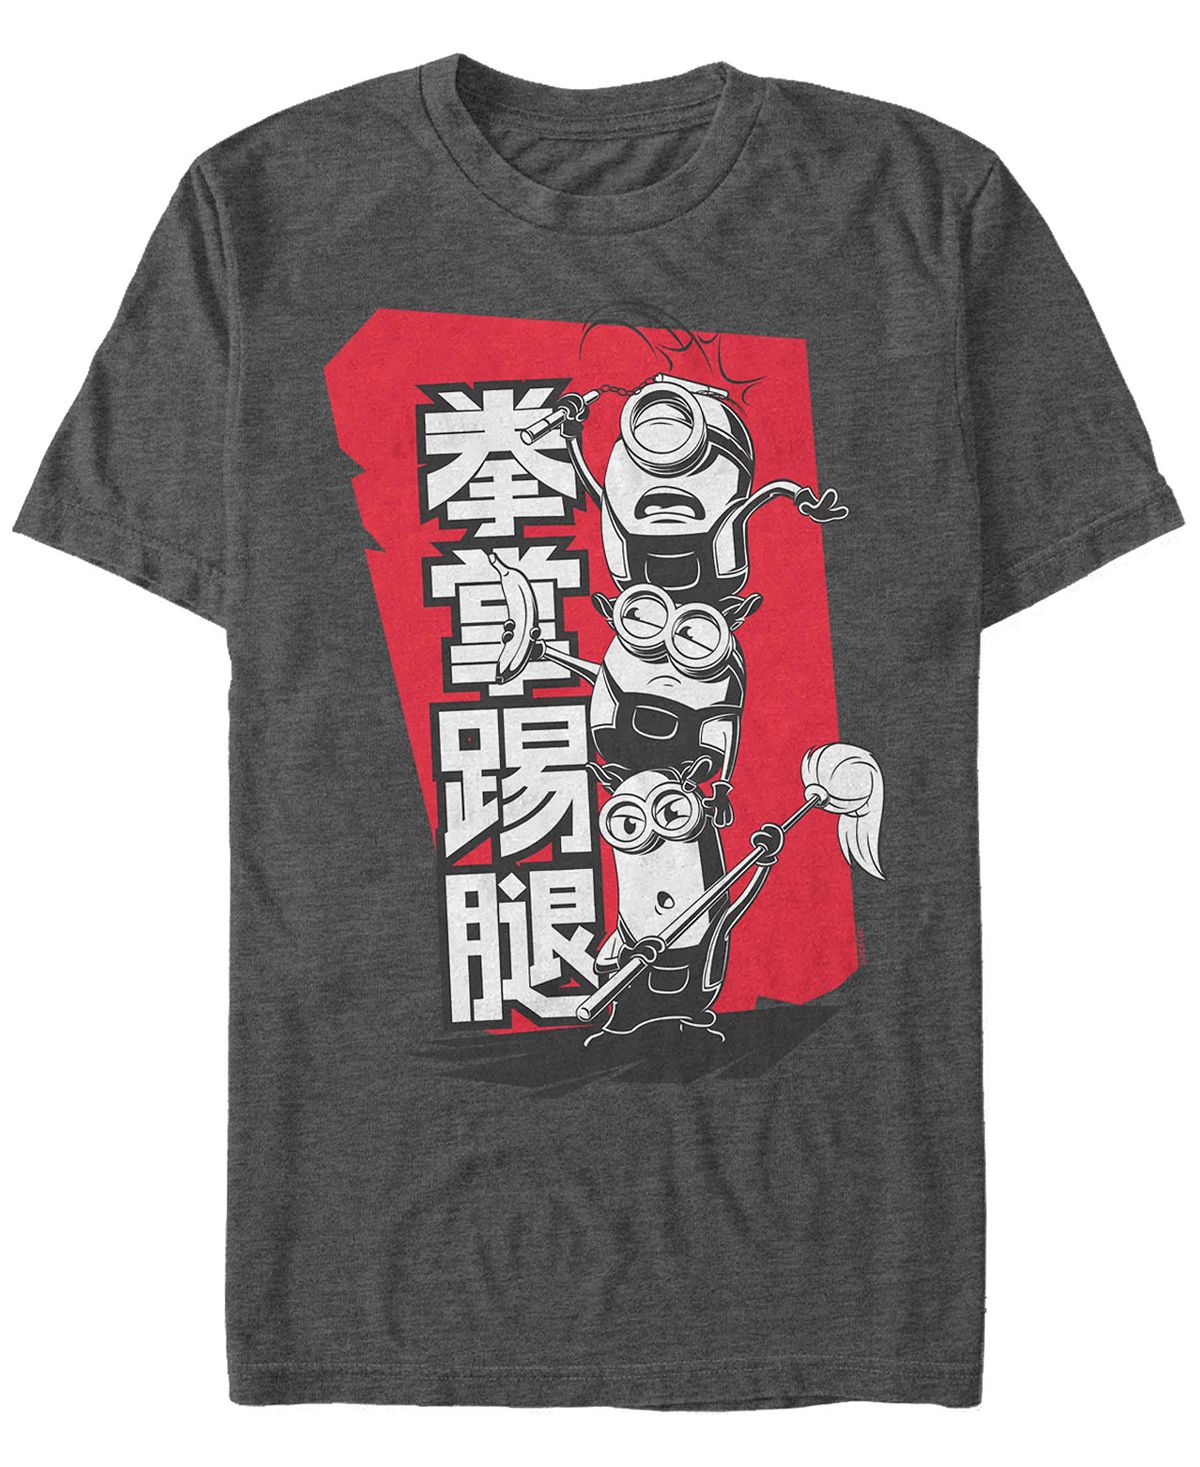 Мужская футболка с короткими рукавами Minions Kanji Stack Fifth Sun напольная раскраска гадкий я миньоны играют 53895